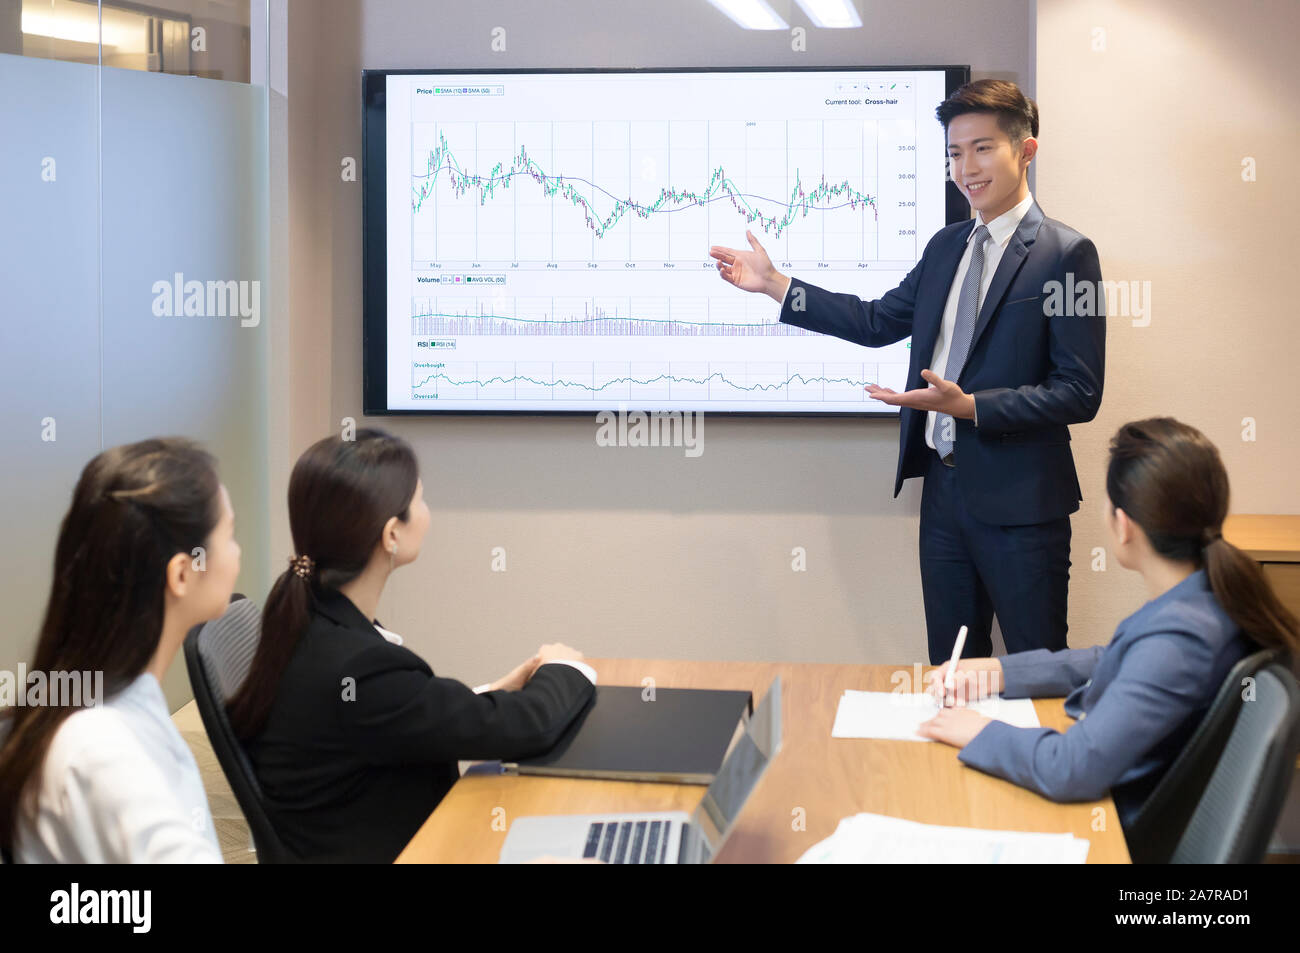 Giovane uomo d'affari sorridente in tuta che dà una presentazione in una sala da consiglio con una tabella su uno schermo dietro di lui e con altri tre uomini d'affari Foto Stock